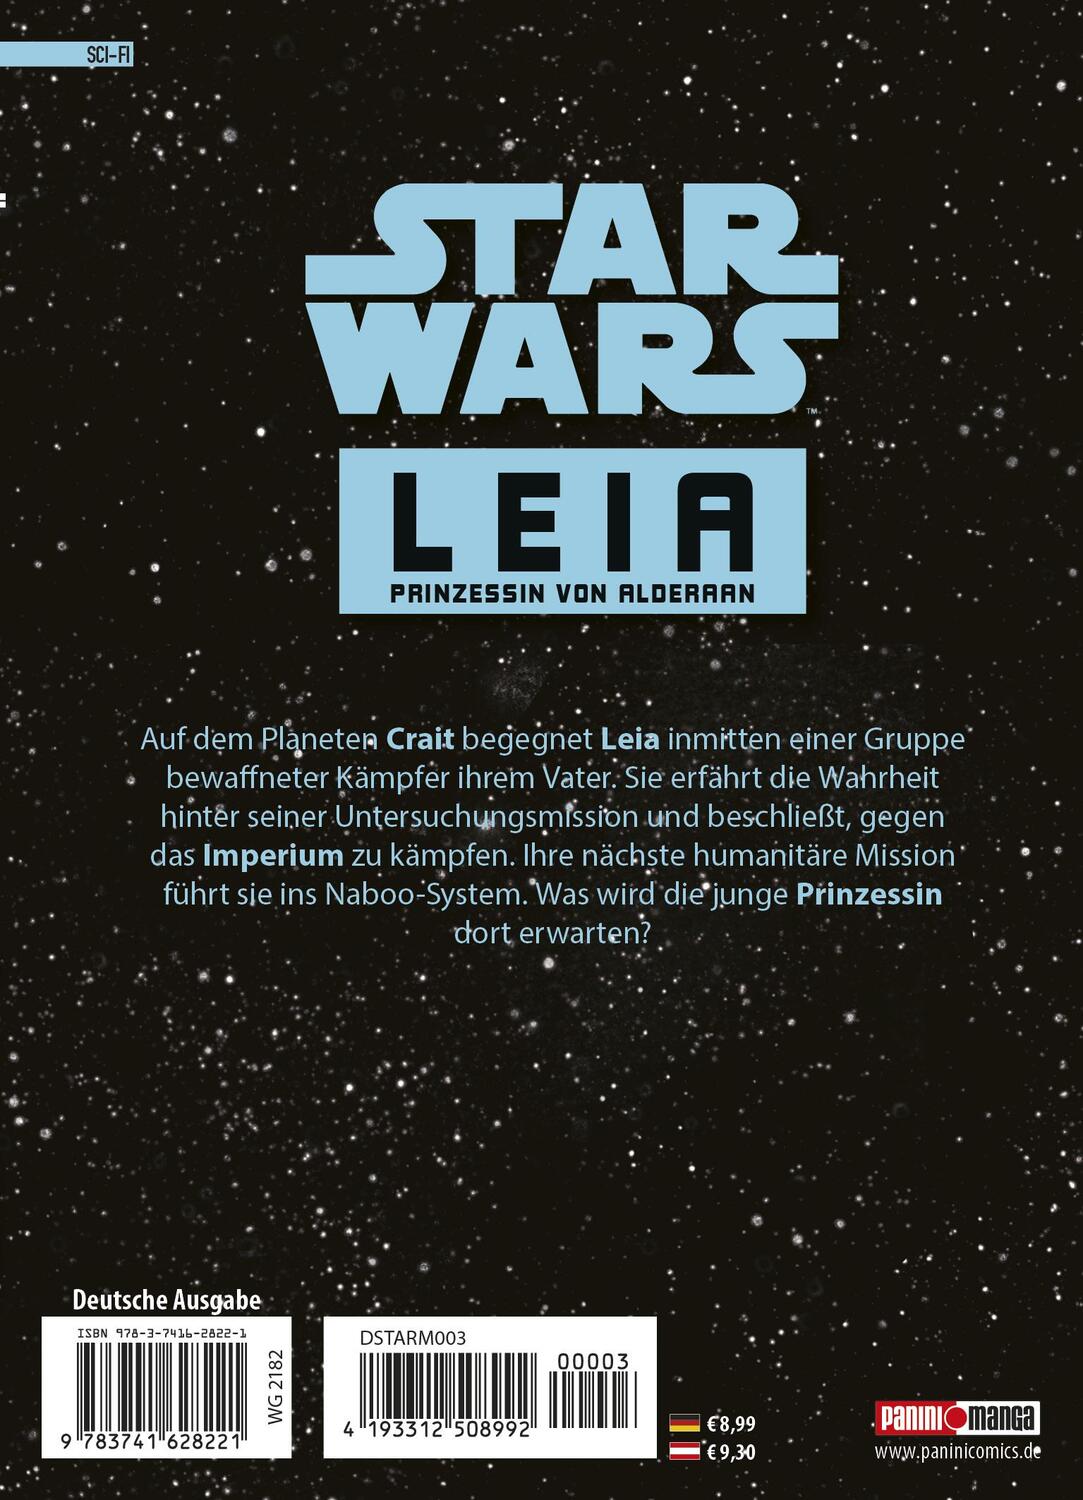 Rückseite: 9783741628221 | Star Wars - Leia, Prinzessin von Alderaan (Manga) 02 | Bd. 2 | Buch